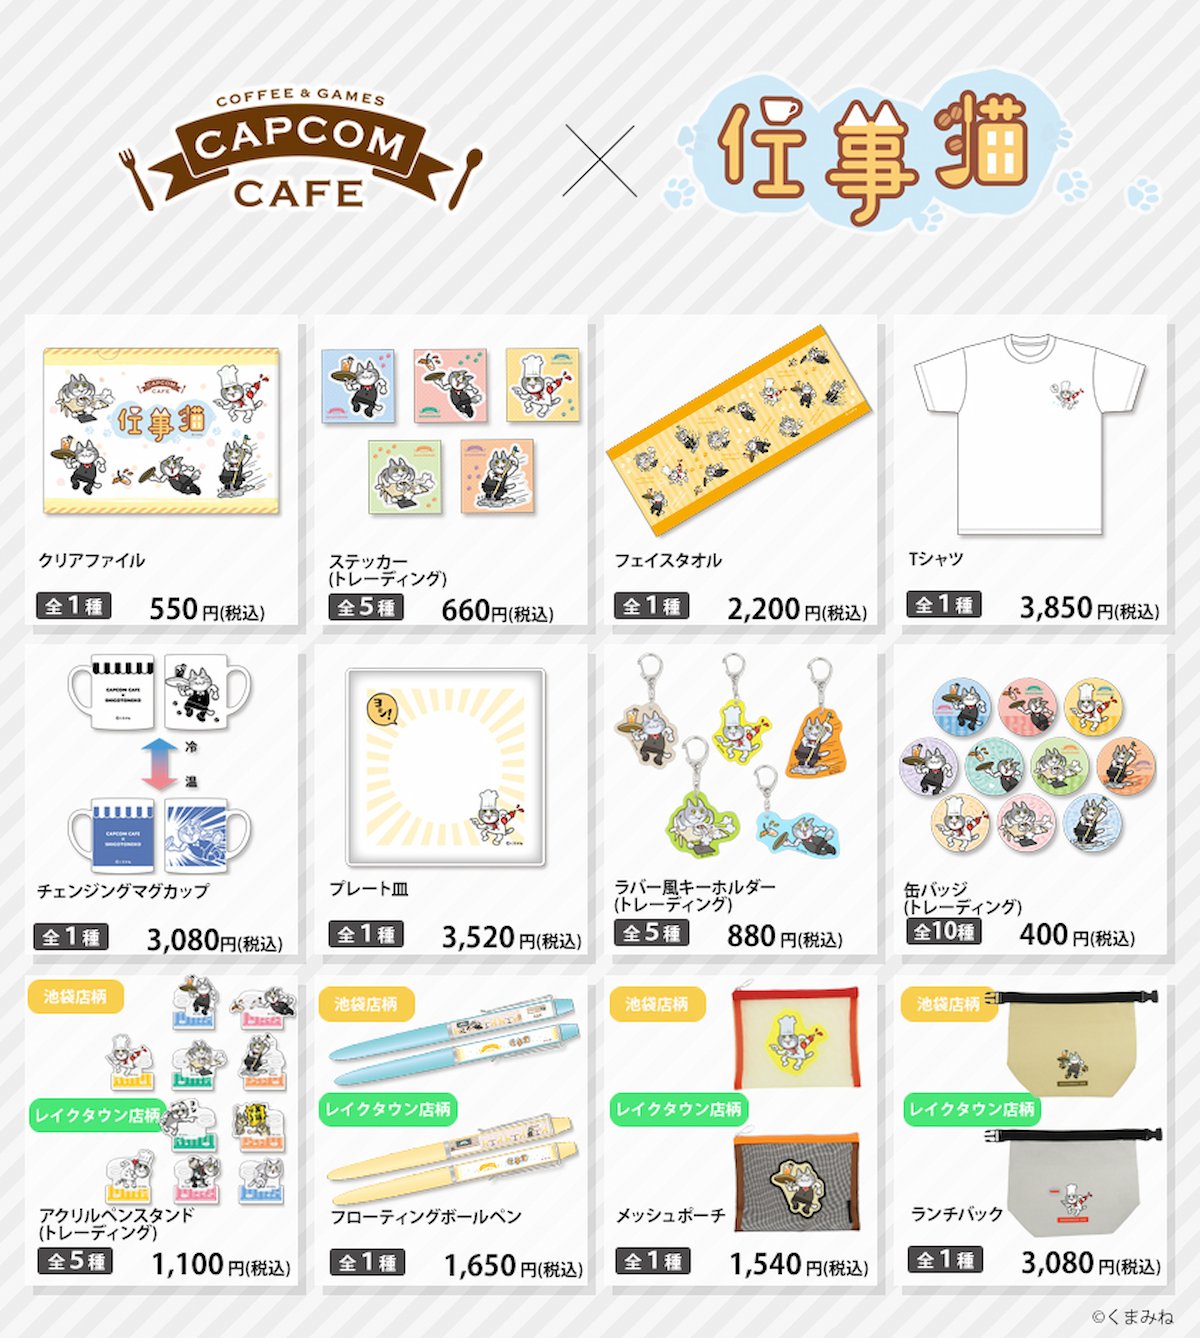 Capcom Cafe x Shigoto Neko 合作商品